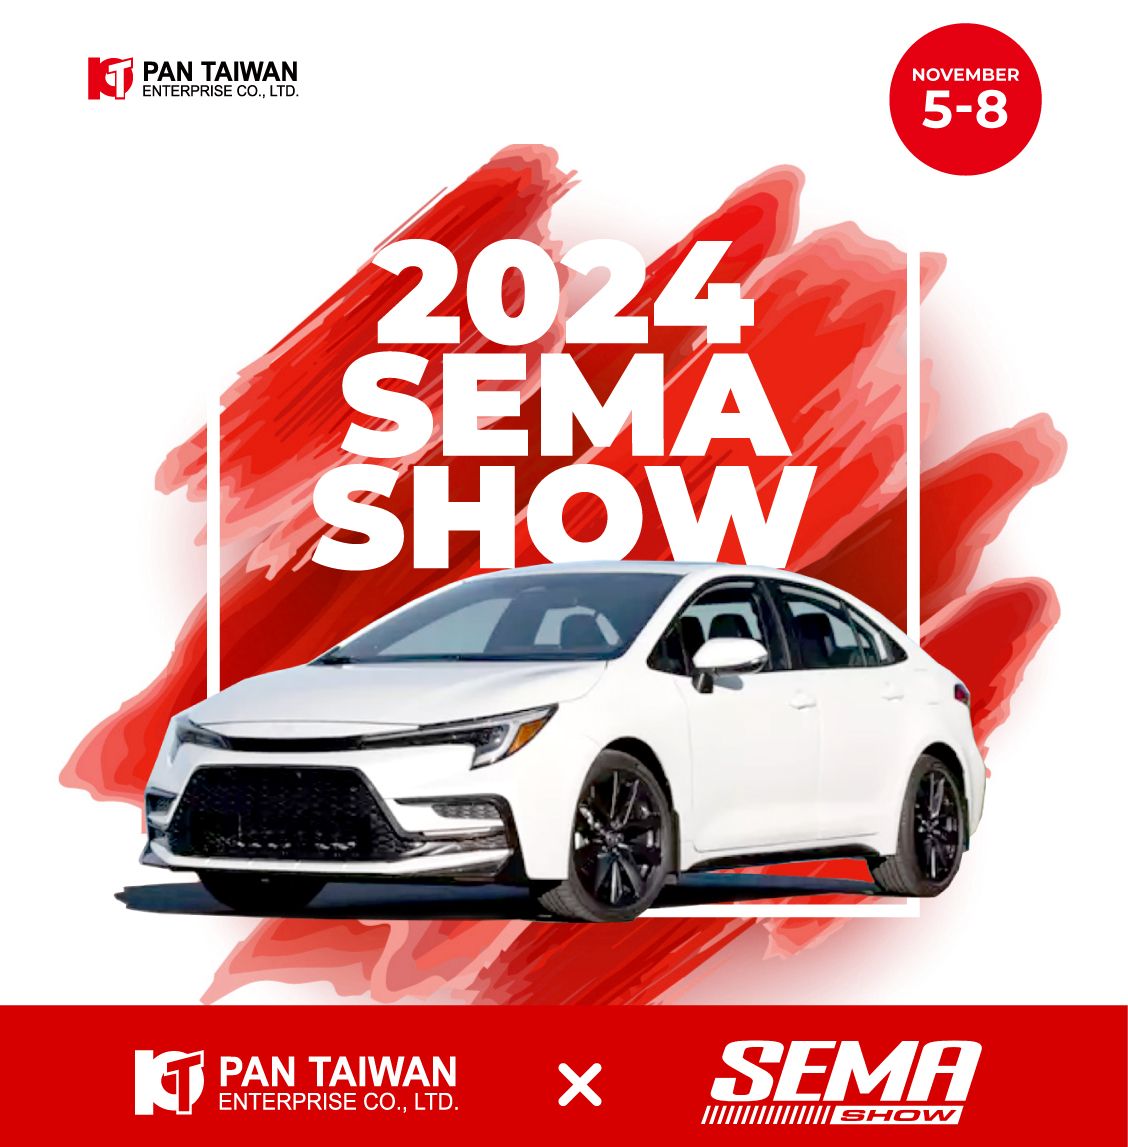 Pan Taiwan, en førende producent af bilreservedele baseret i Taiwan, er begejstret for at annoncere, at vi vil udstille vores innovative produkter på SEMA Show i Las Vegas fra 5. til 8. november 2024.